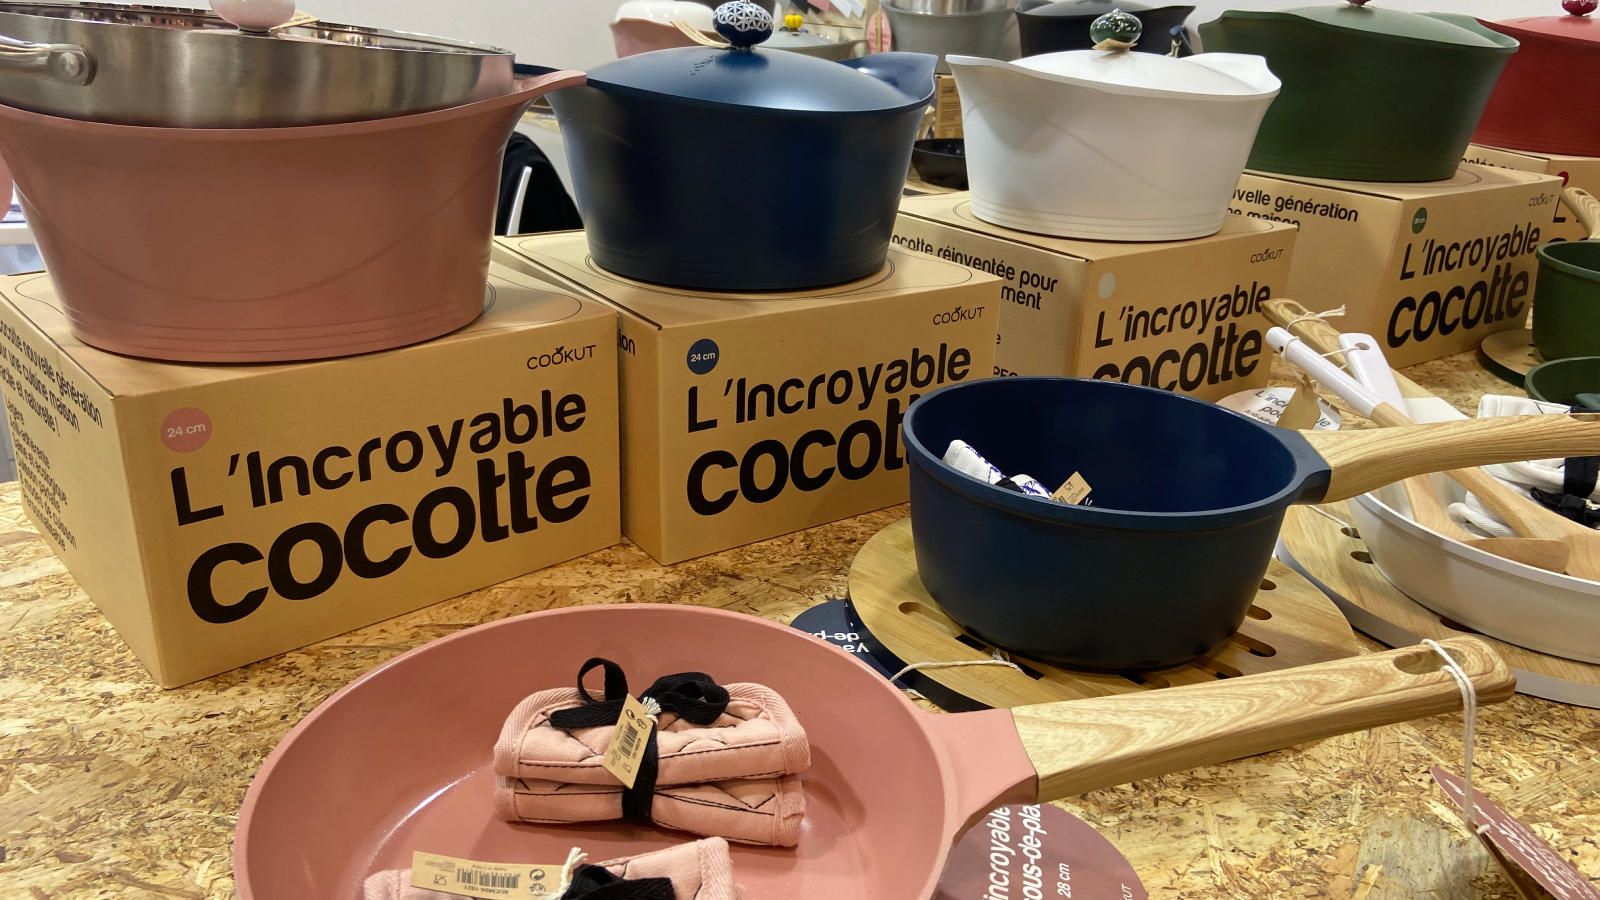 <p>Colori e accessori per comporre la propria linea di pentole Cocotte by Cookut</p>
